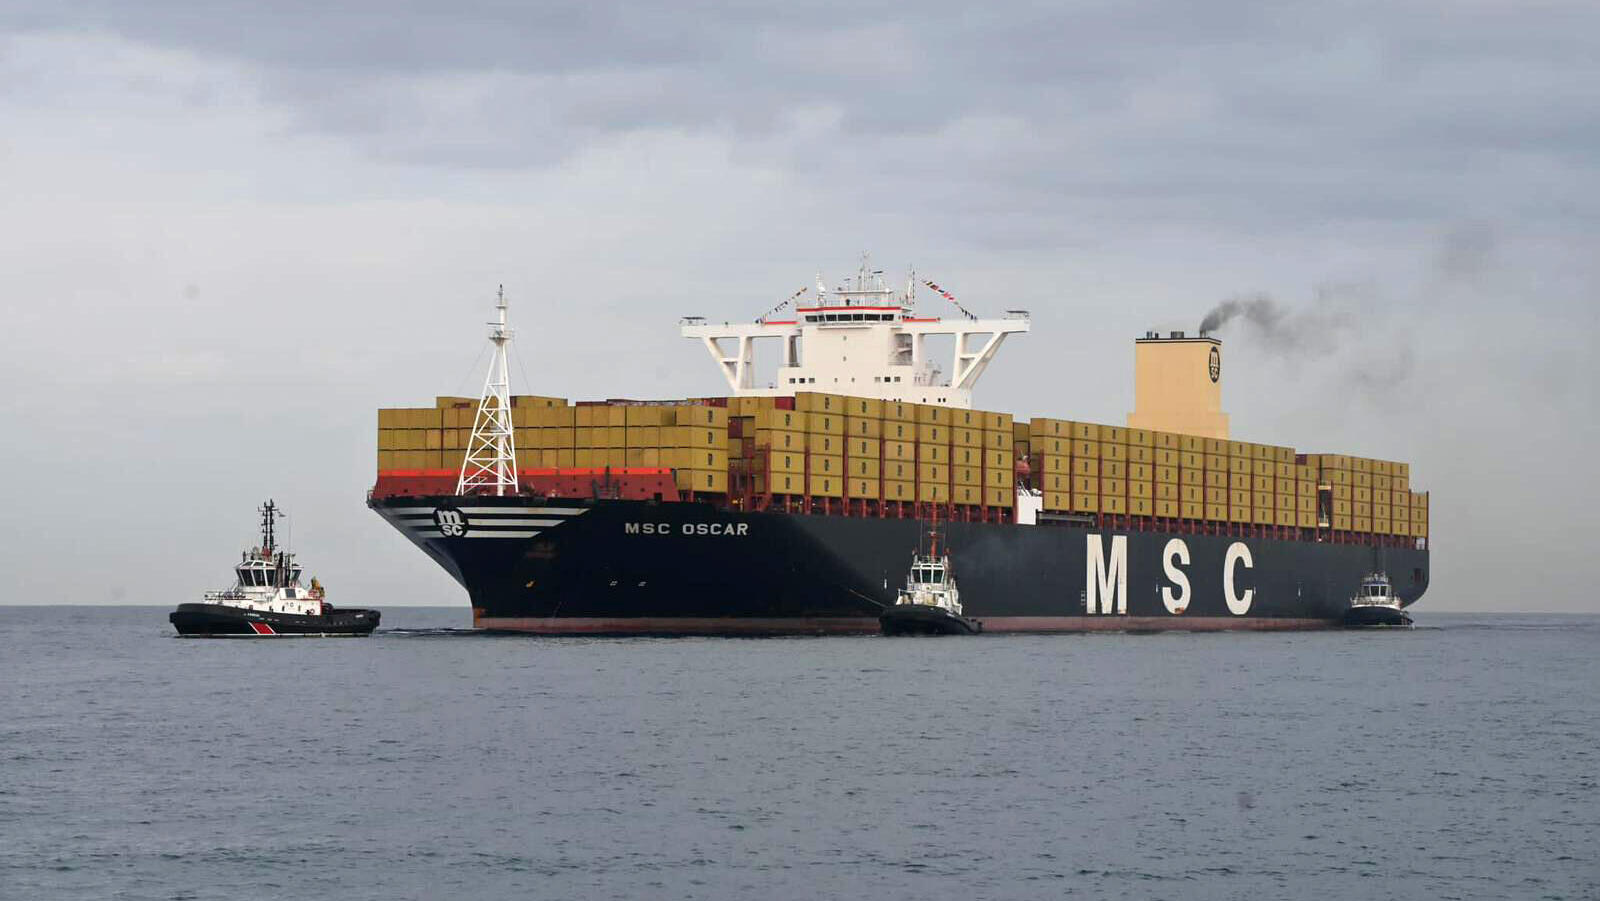 אוניית MSC Oscar בנמל אשדוד